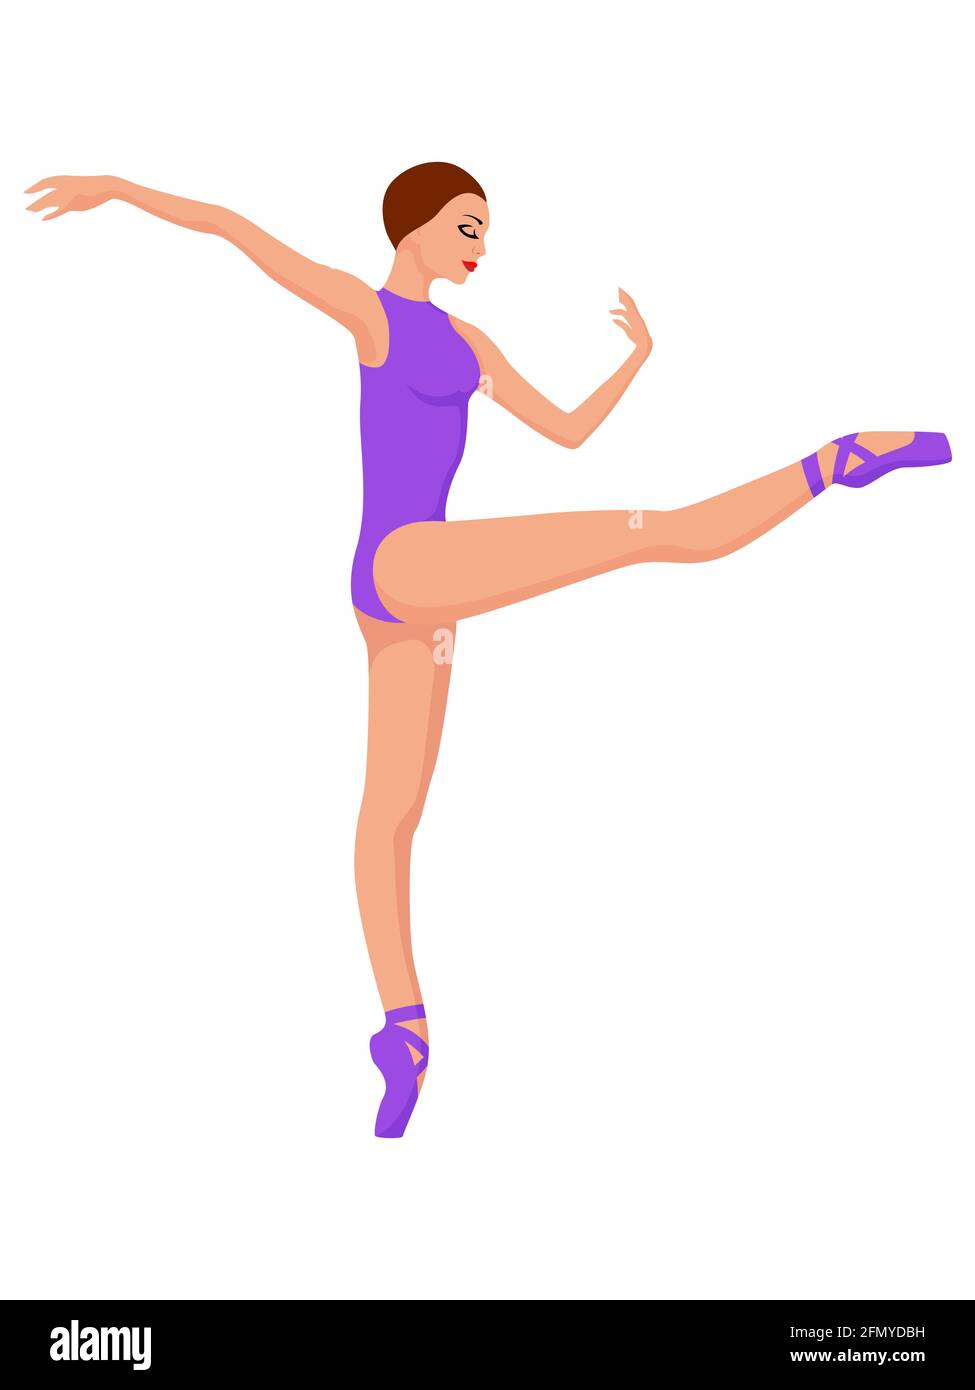 Ballerine élégante en léopard violet et chaussure de pointe, vecteur de dessin à la main, isolé sur fond blanc Illustration de Vecteur